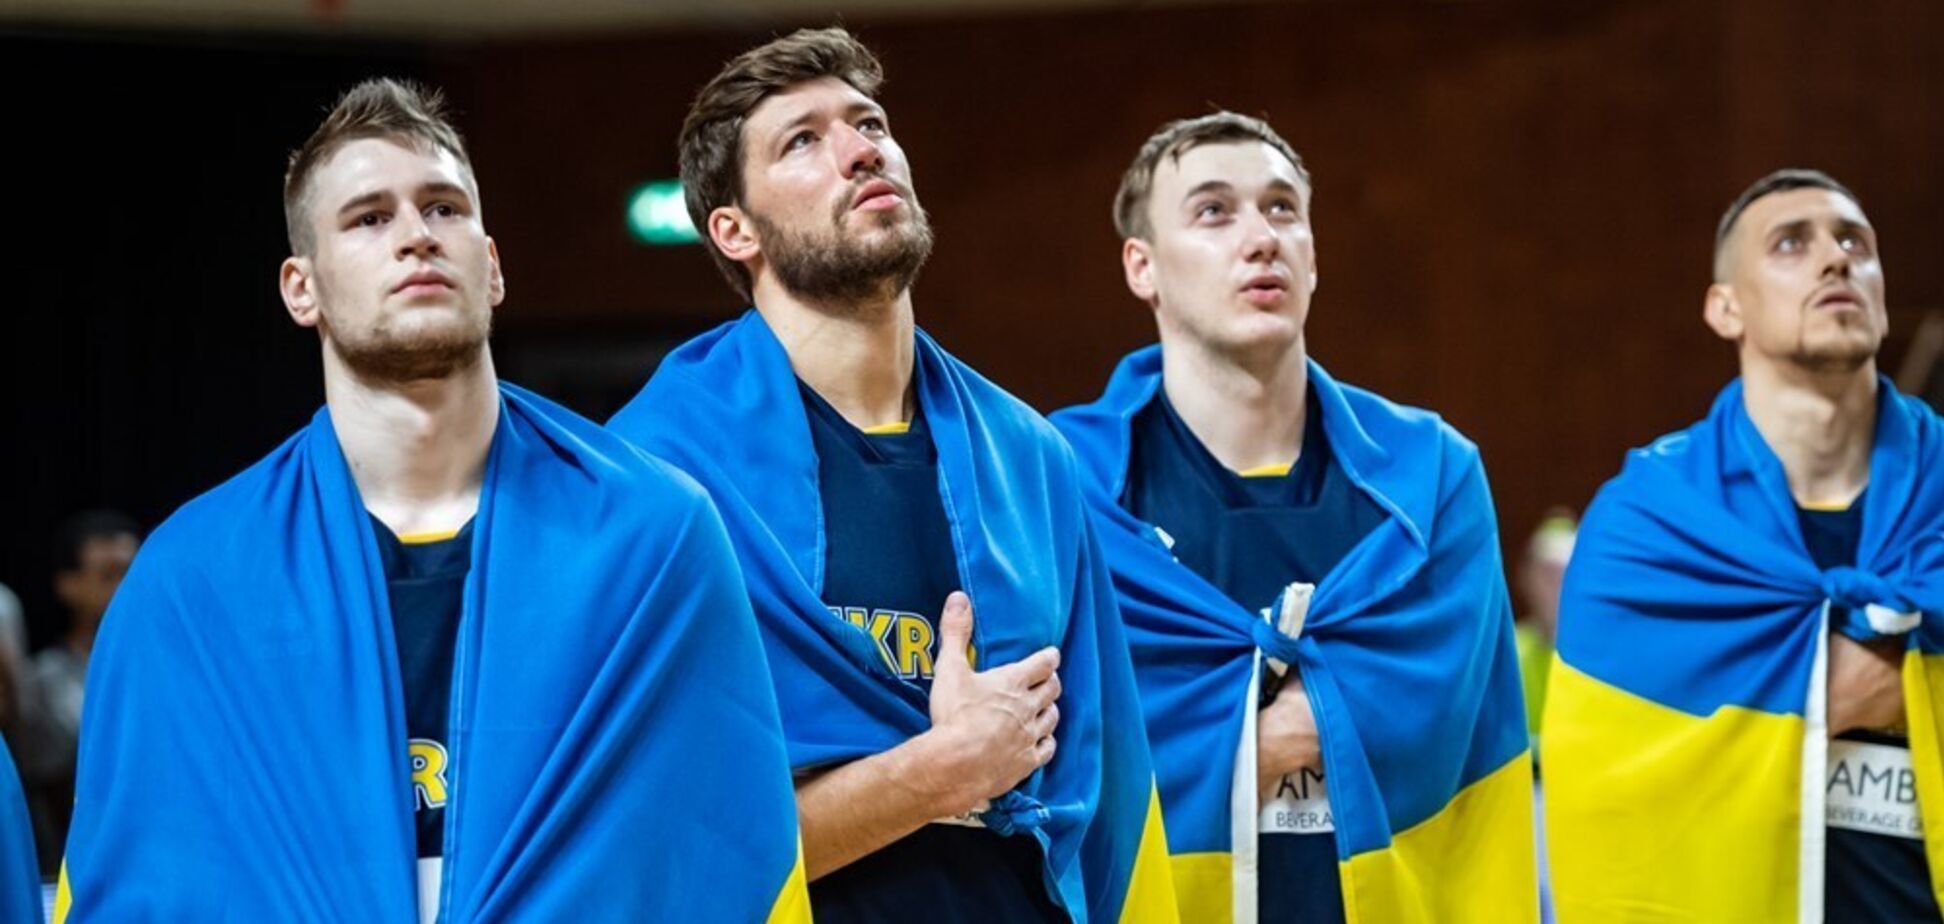 Состав сборной Украины изменился на 75%: кого недосчитался Степановский по сравнению с заявкой на Евробаскет-2022